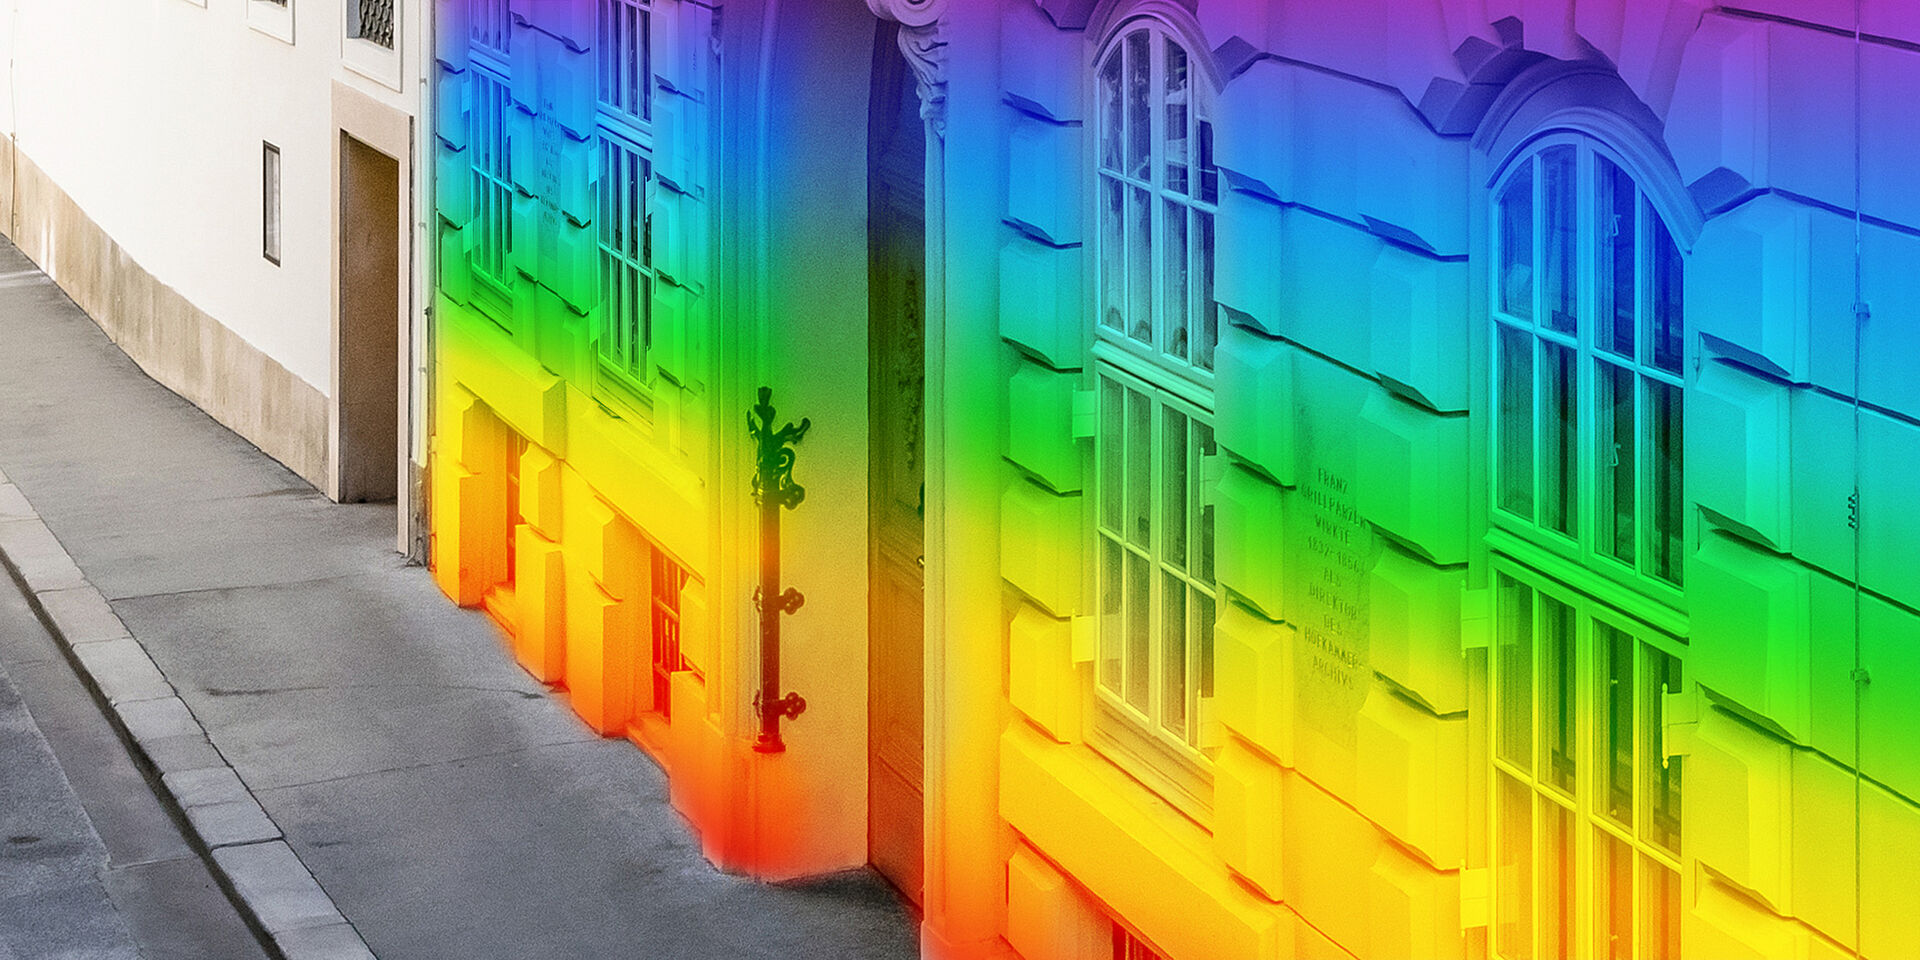 Hausfassade in Regenbogen-Farben eingefärbt